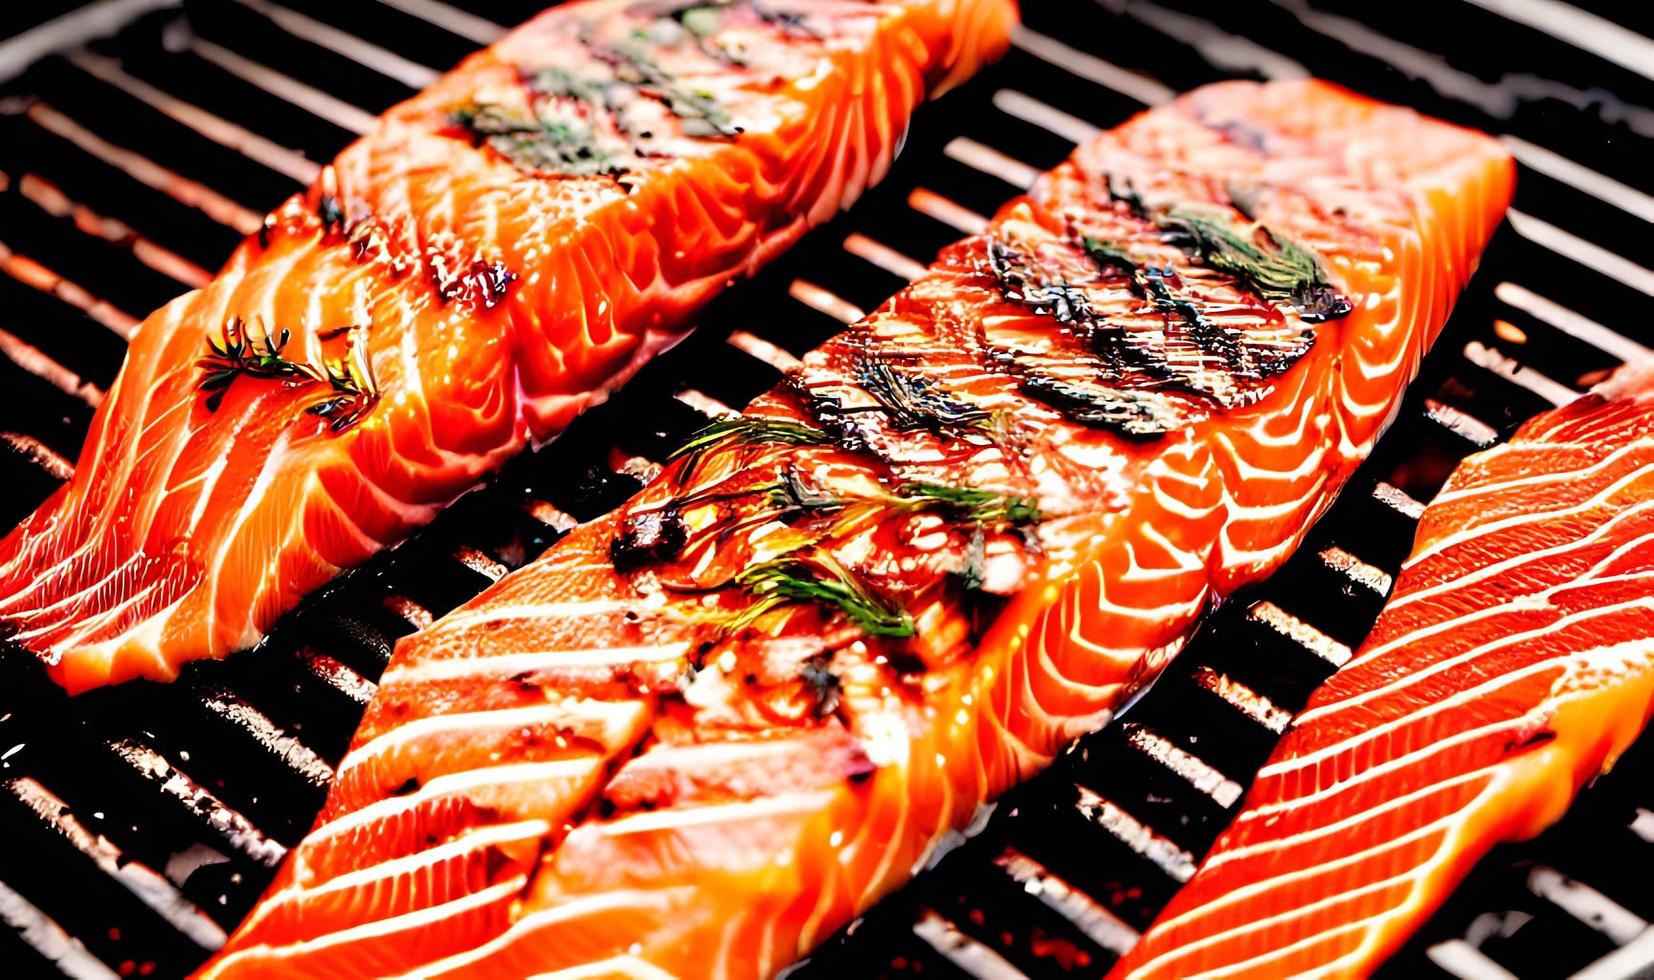 saumon grillé. aliments sains saumon cuit au four. plat de poisson chaud. photo